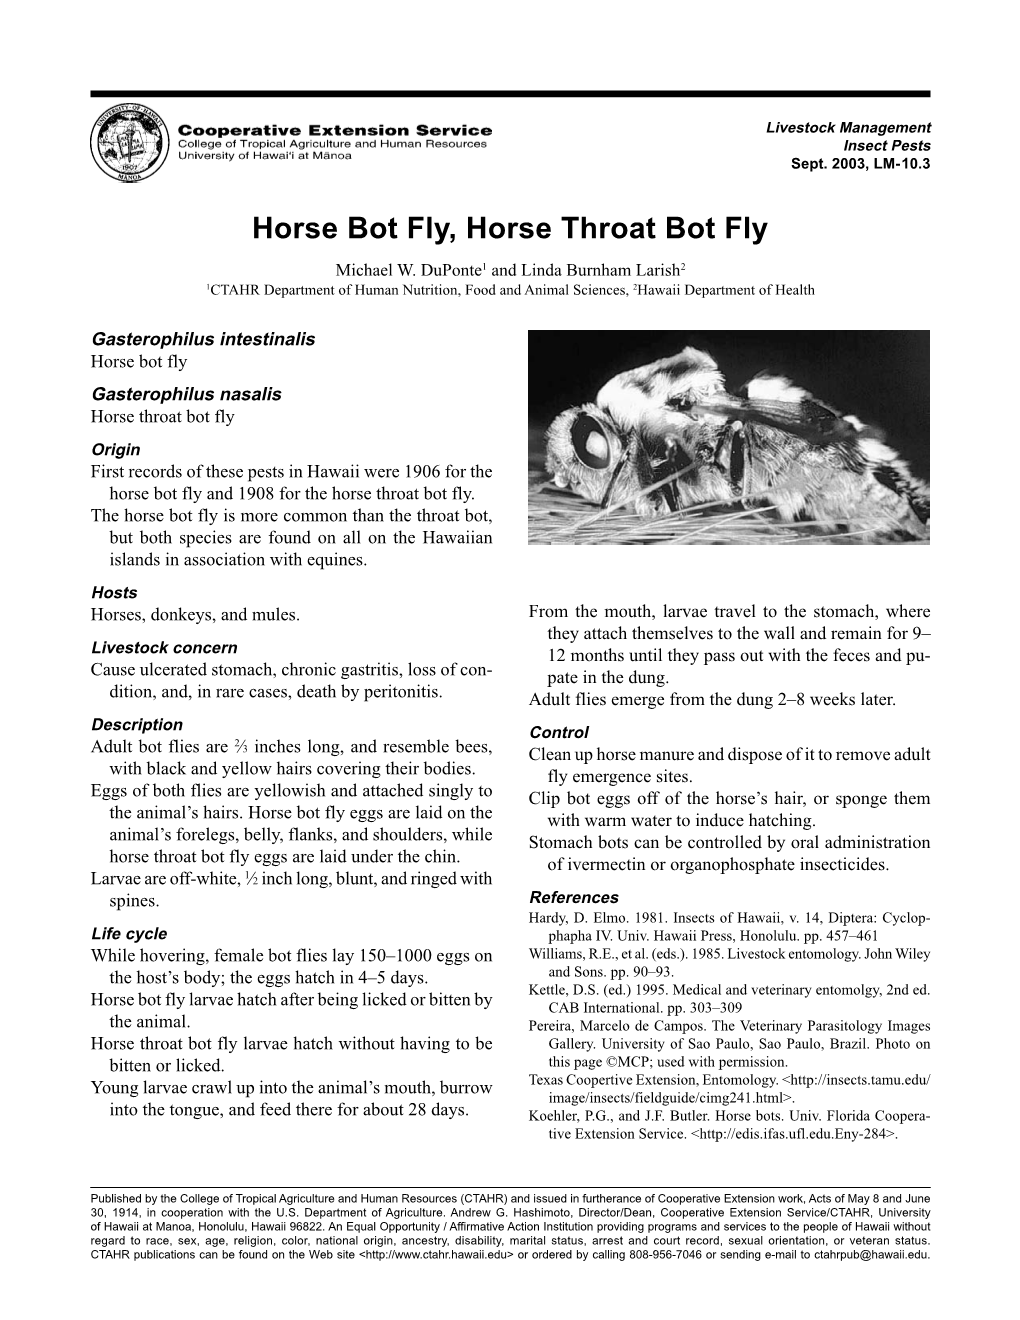 Horse Bot Flies